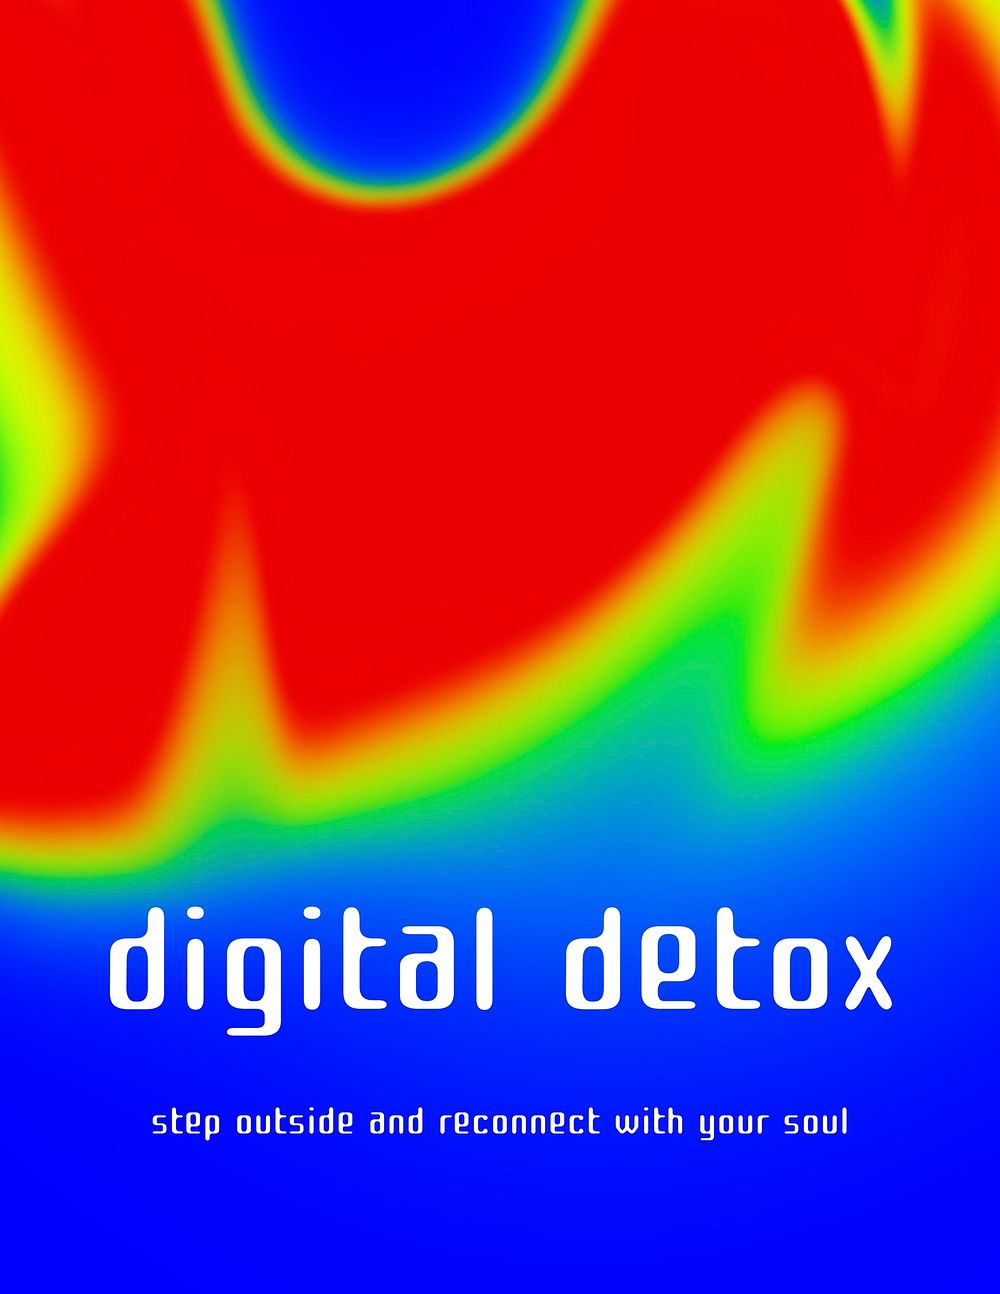 Digital detox poster template